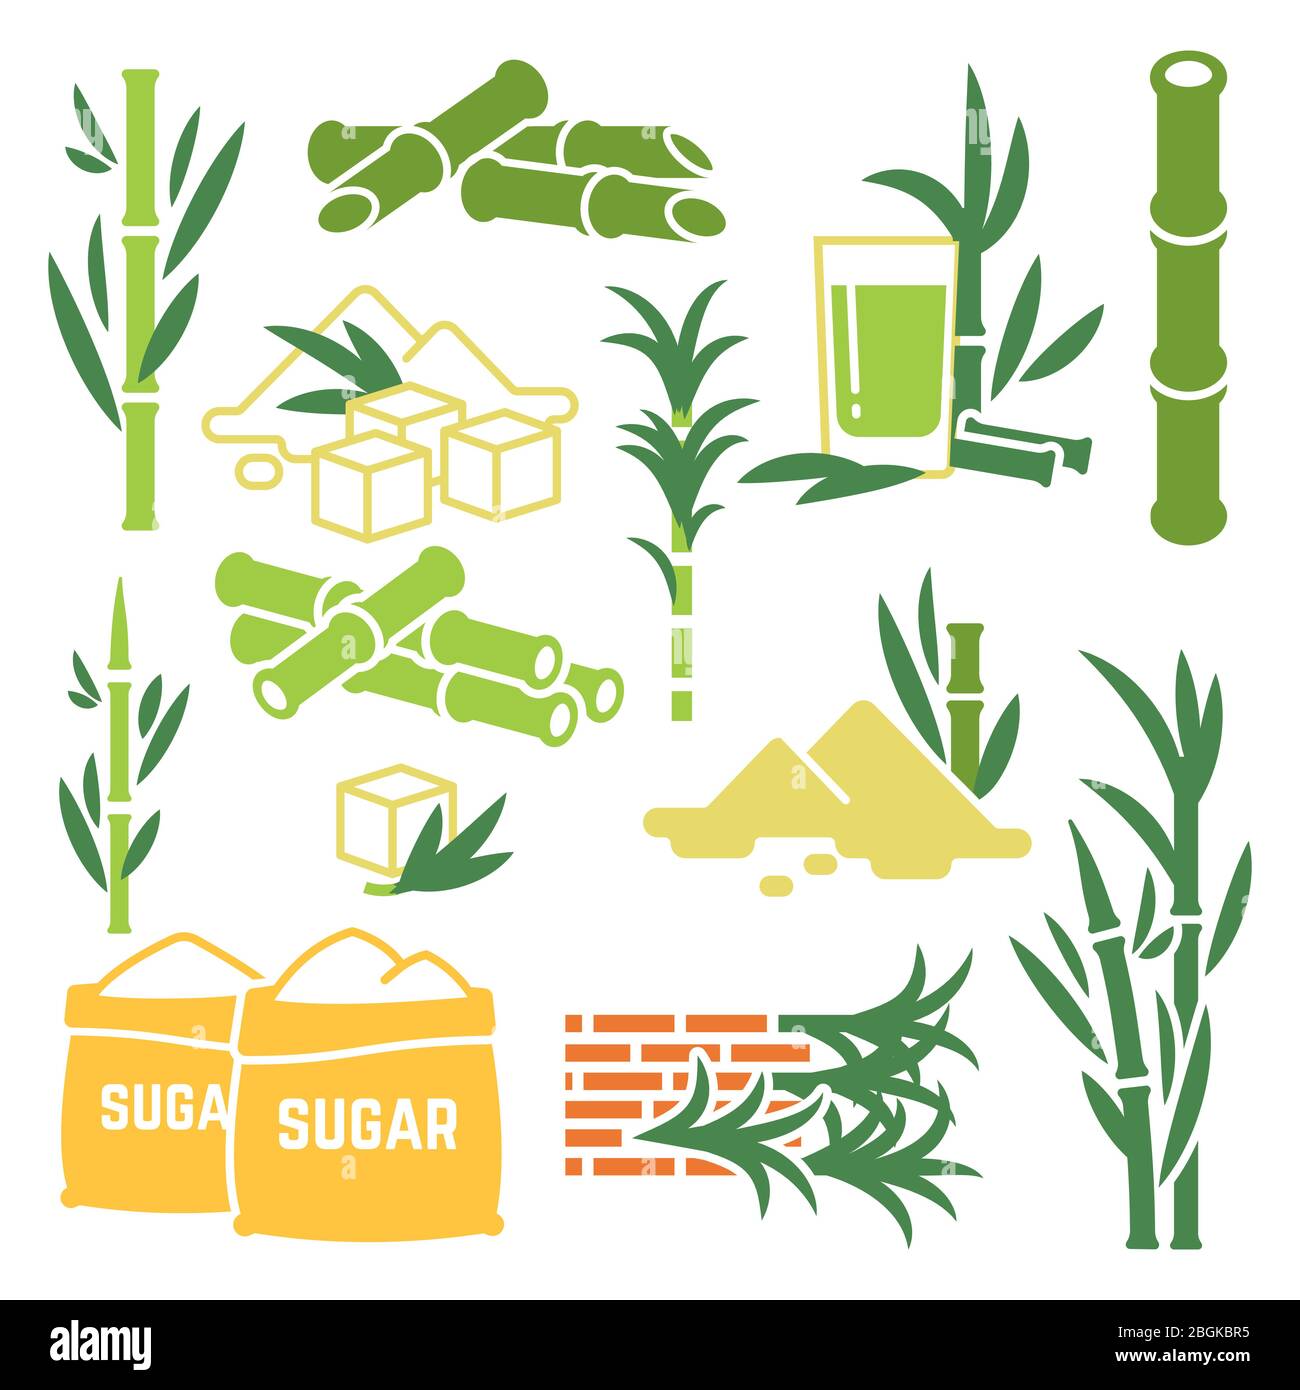 Sugar cane, sugarcane plant harvest vector icons isolated on white background. Illustration of cane plant, natural sugarcane flat style Stock Vector